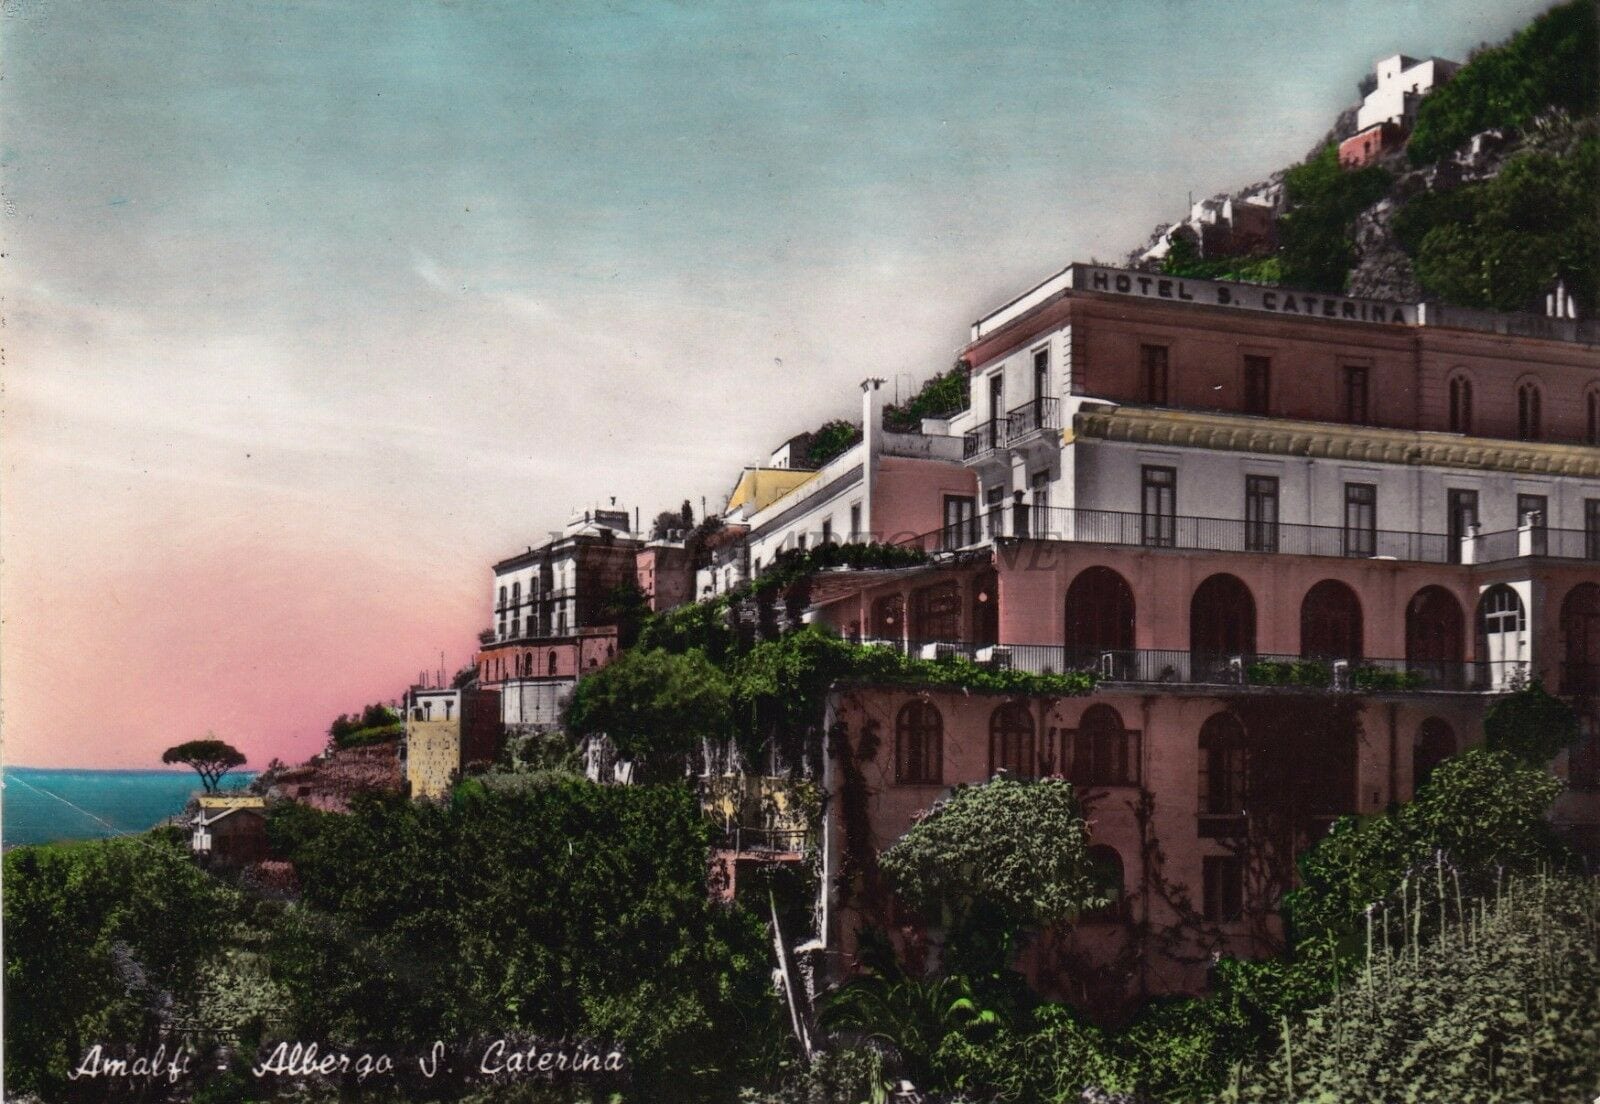 Отель Санта Катерина в Амальфи. Фото 1956. Отель размещается на вилле конца 19 века в свободном стиле, в живописном пейзаже побережья Амальфи..